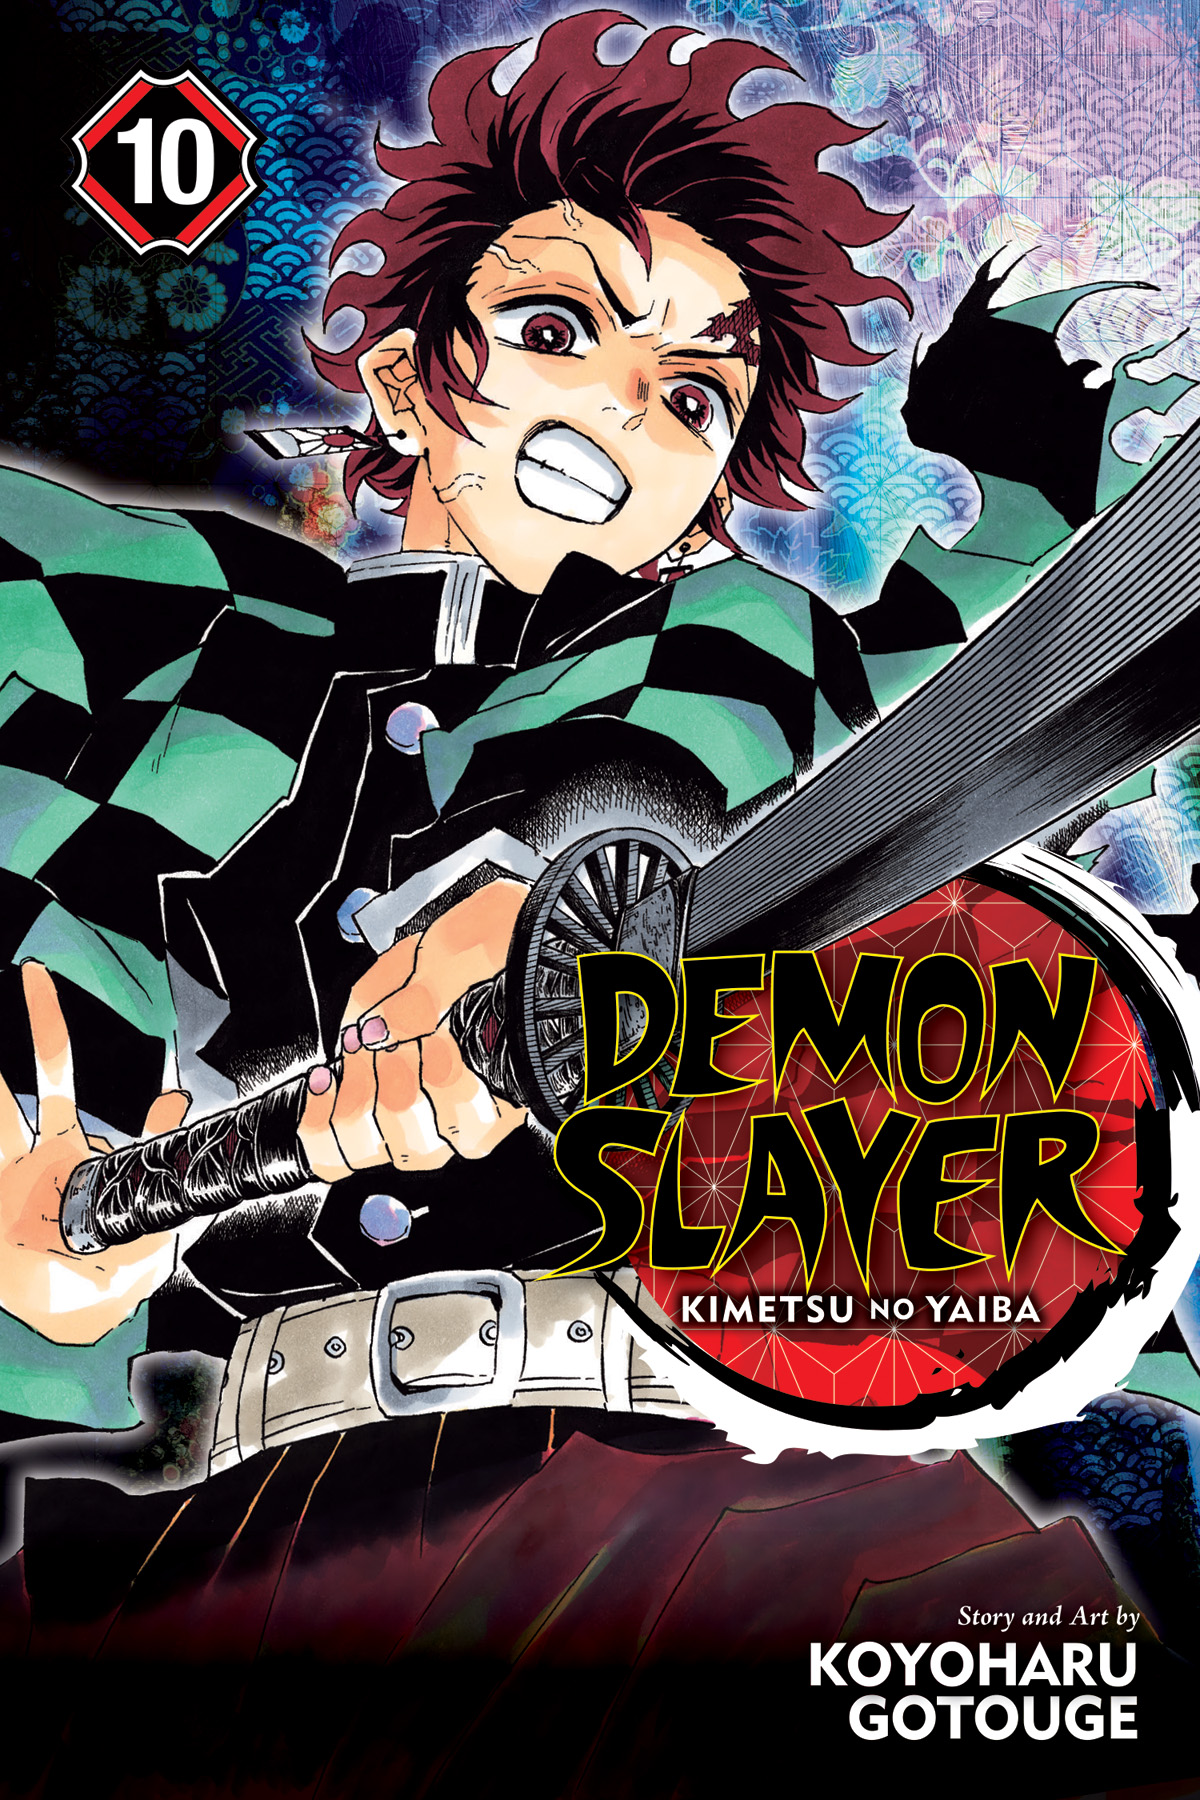 Demon Slayer Kimetsu No Yaiba Season 2 When Is It Coming Check